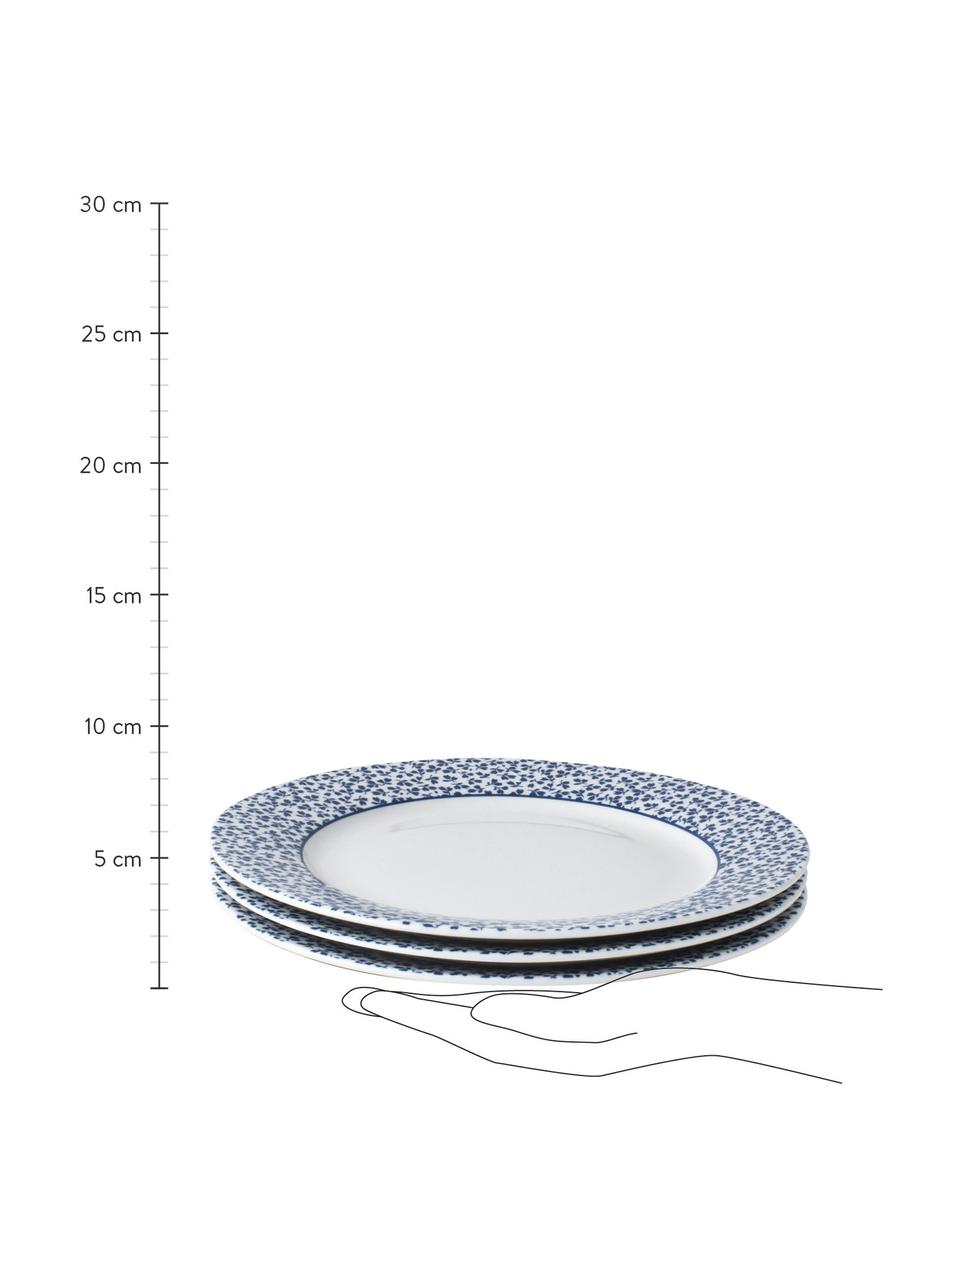 Snídaňové talíře Candy Rose, 4 ks, Porcelán Fine Bone China, Bílá, modrá, Ø 23 cm